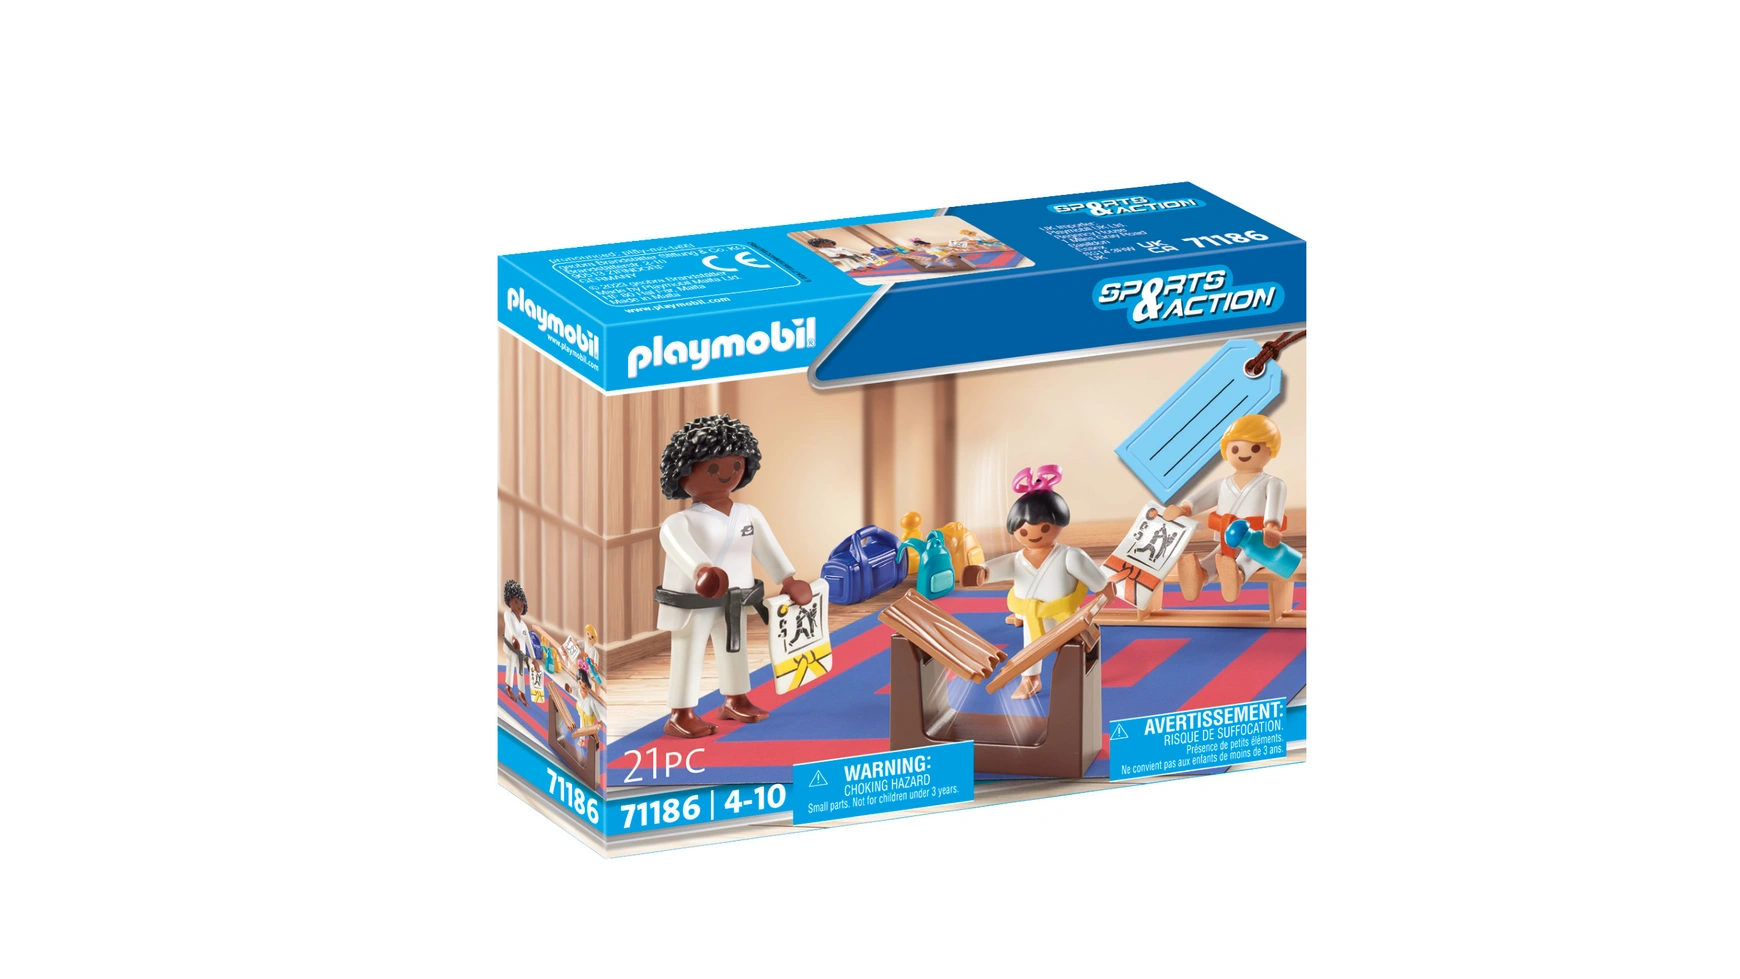 Спорт и экшн обучение каратэ Playmobil набор подарочный подарок для дочки